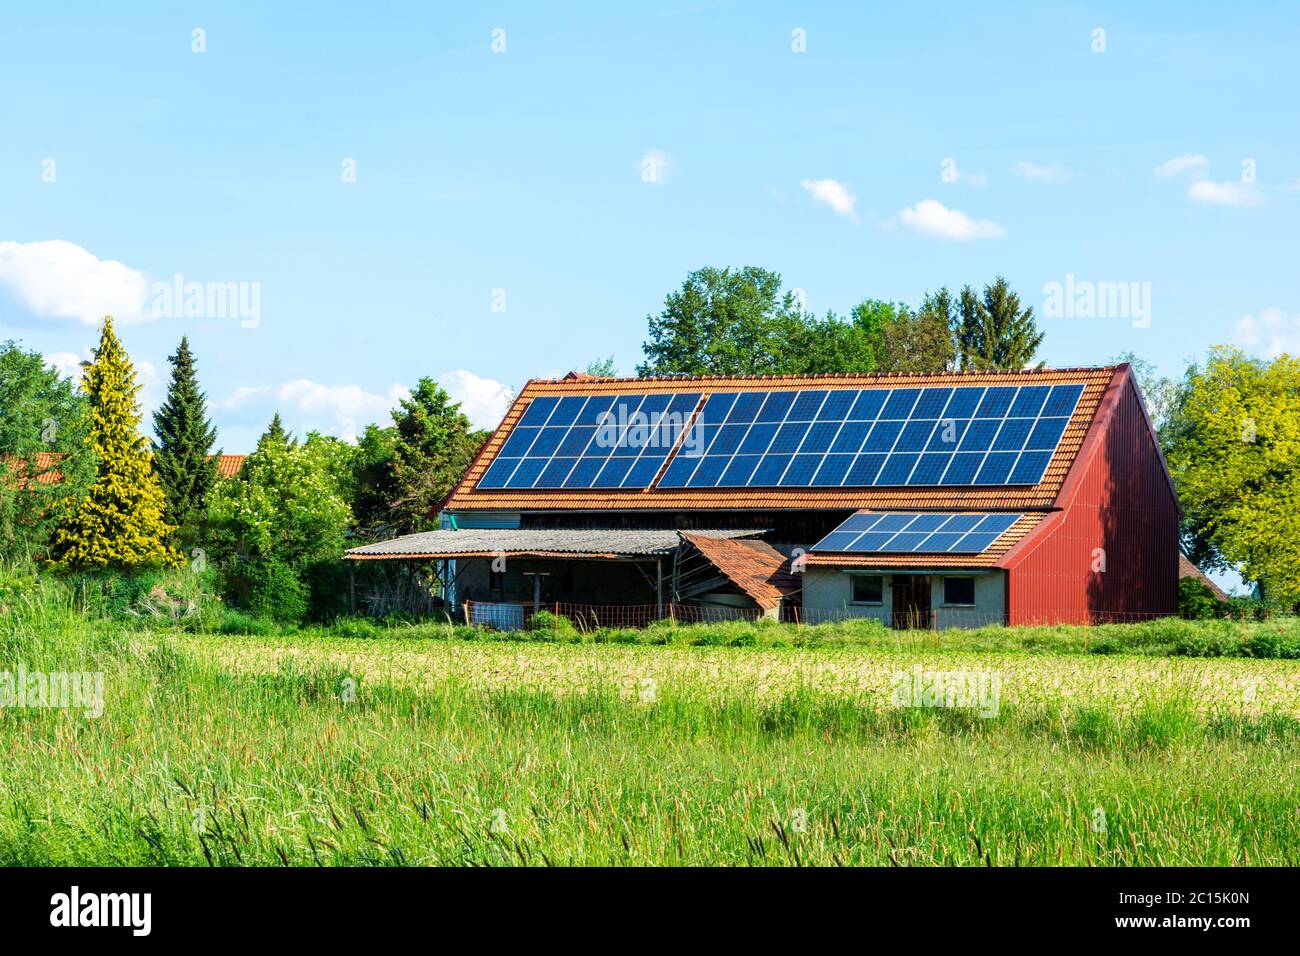 Grüner Energie mit Solarkollektoren auf dem Dach eines landwirtschaftlichen Gebäudes Stockfoto